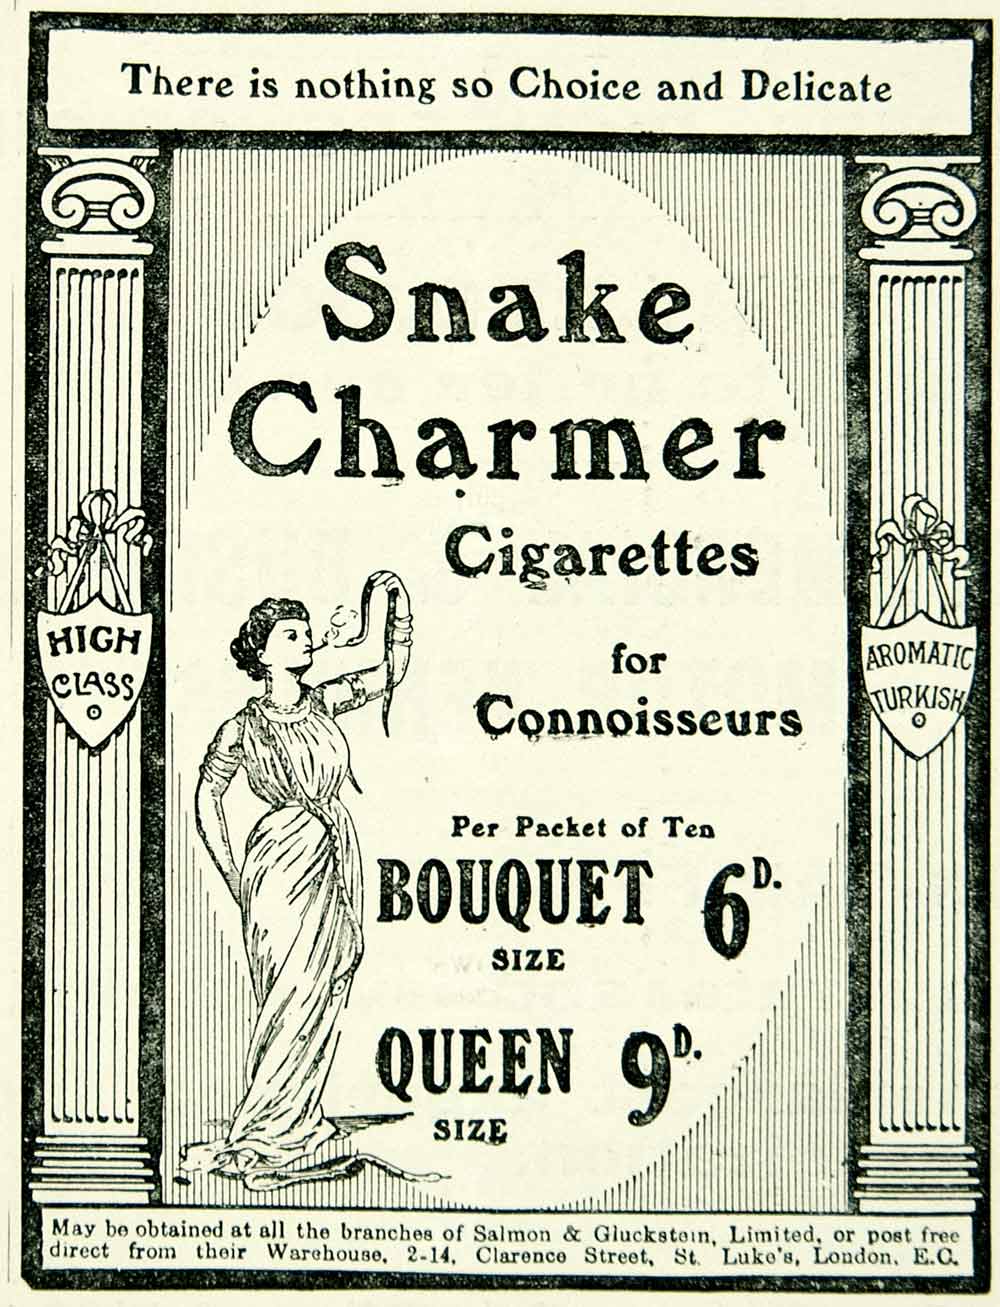 1915 Ad Vintage Snake Charmer Cigarettes Salmon & Gluckstein British Tobacconist